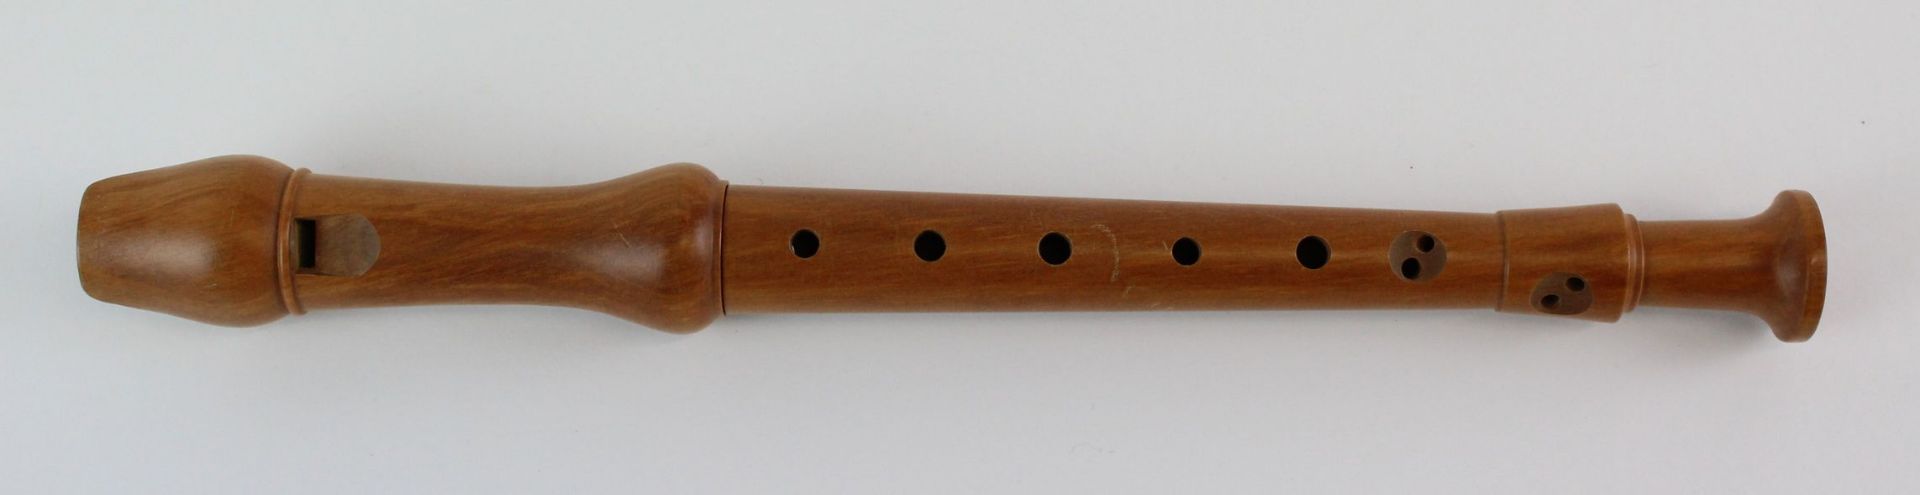 Konvolut bestehend aus 3 Flöten verschiedener Hersteller - Image 4 of 5